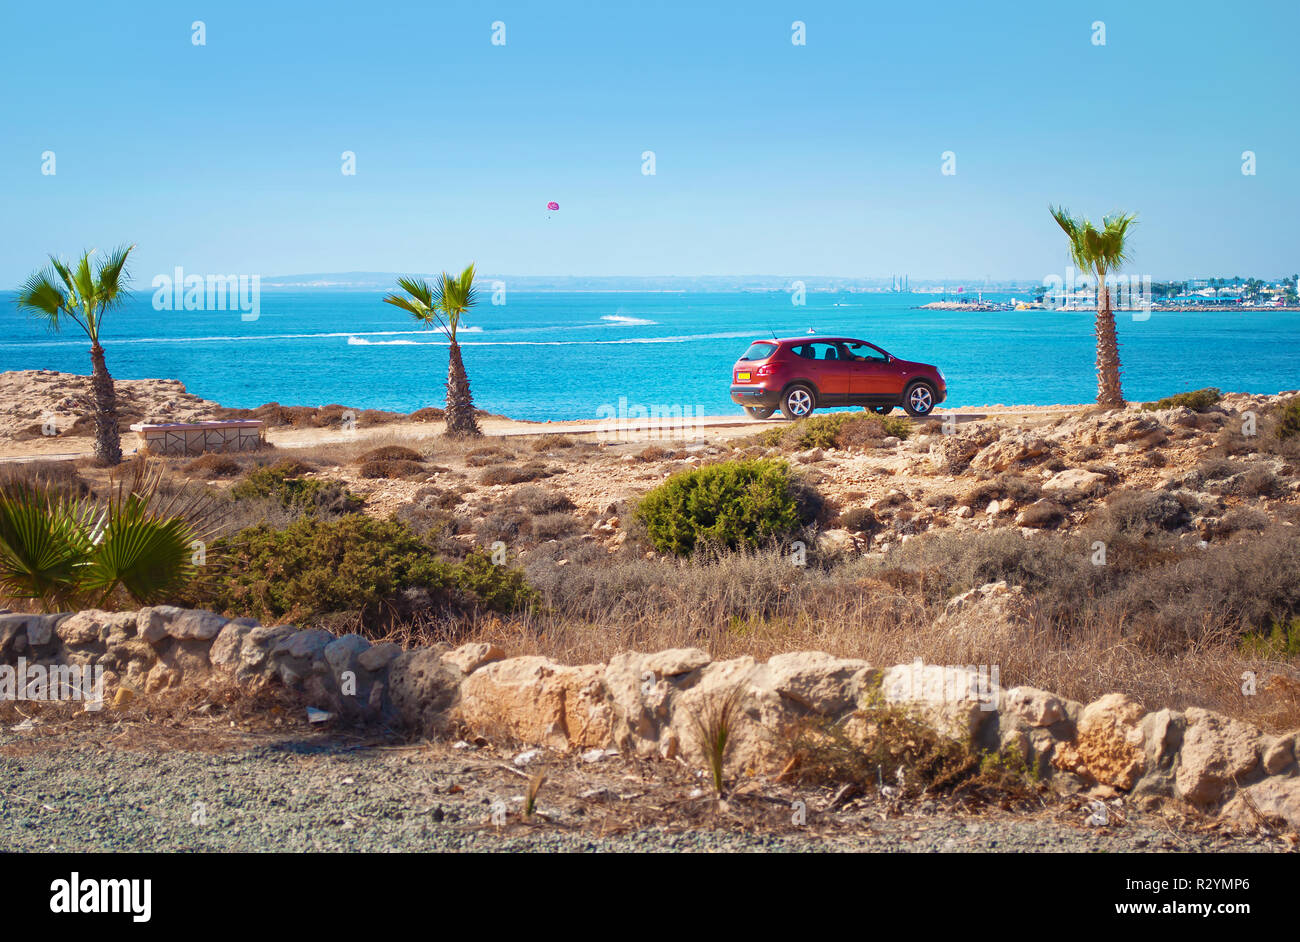 Une voiture berline rouge courte parmi les palmiers, buissons verts, et des pierres sur le fond bleu de la mer. Concept de voyages et de l'aventure, happ Banque D'Images